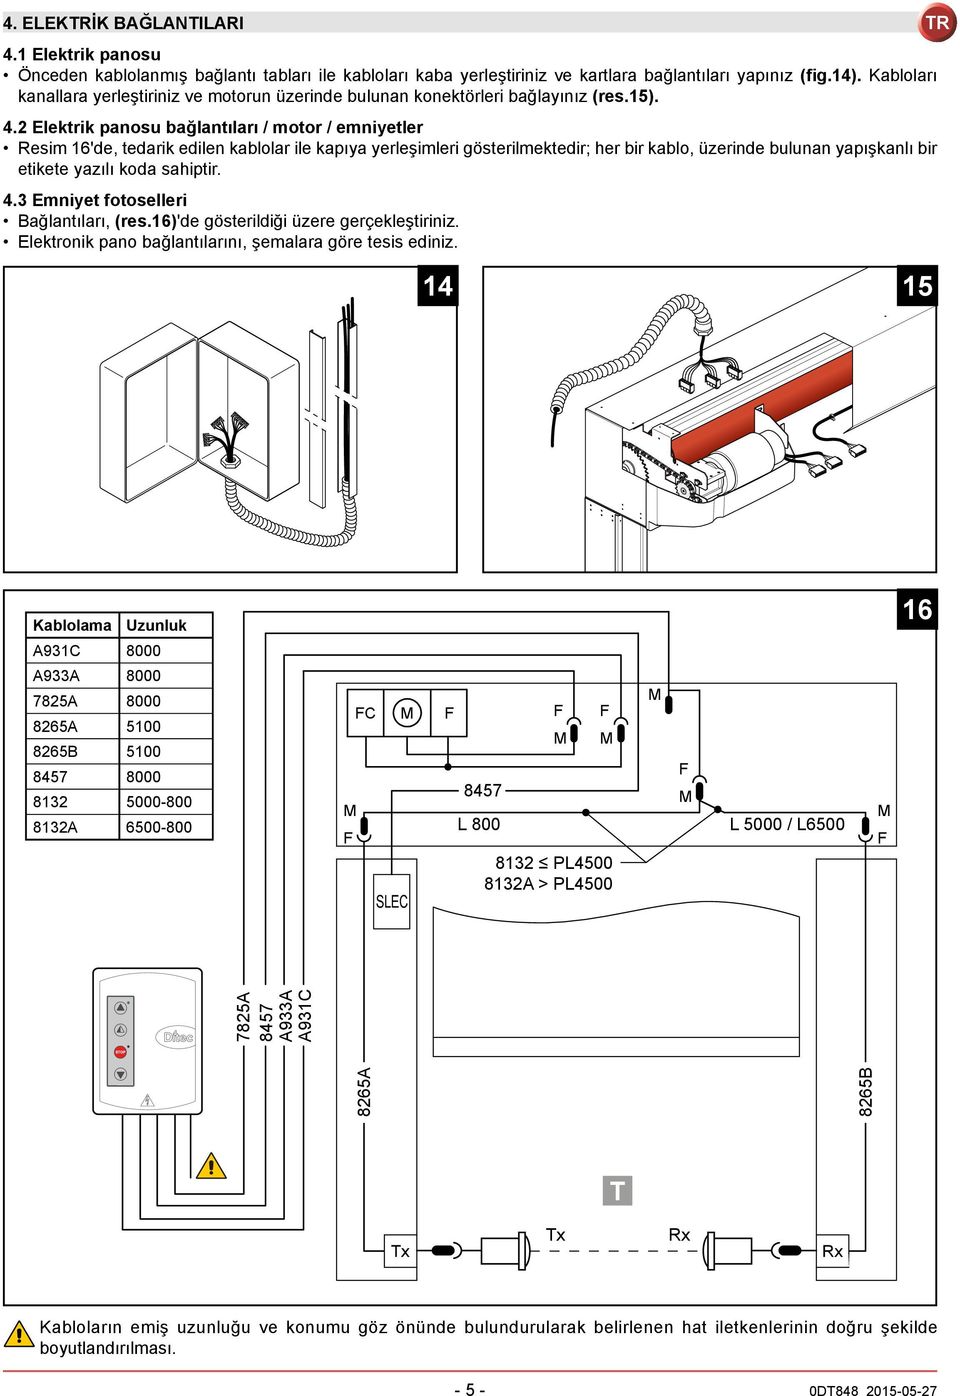 2 Elektrik panosu bağlantıları / motor / emniyetler Resim 16'de, tedarik edilen kablolar ile kapıya yerleşimleri gösterilmektedir; her bir kablo, üzerinde bulunan yapışkanlı bir etikete yazılı koda